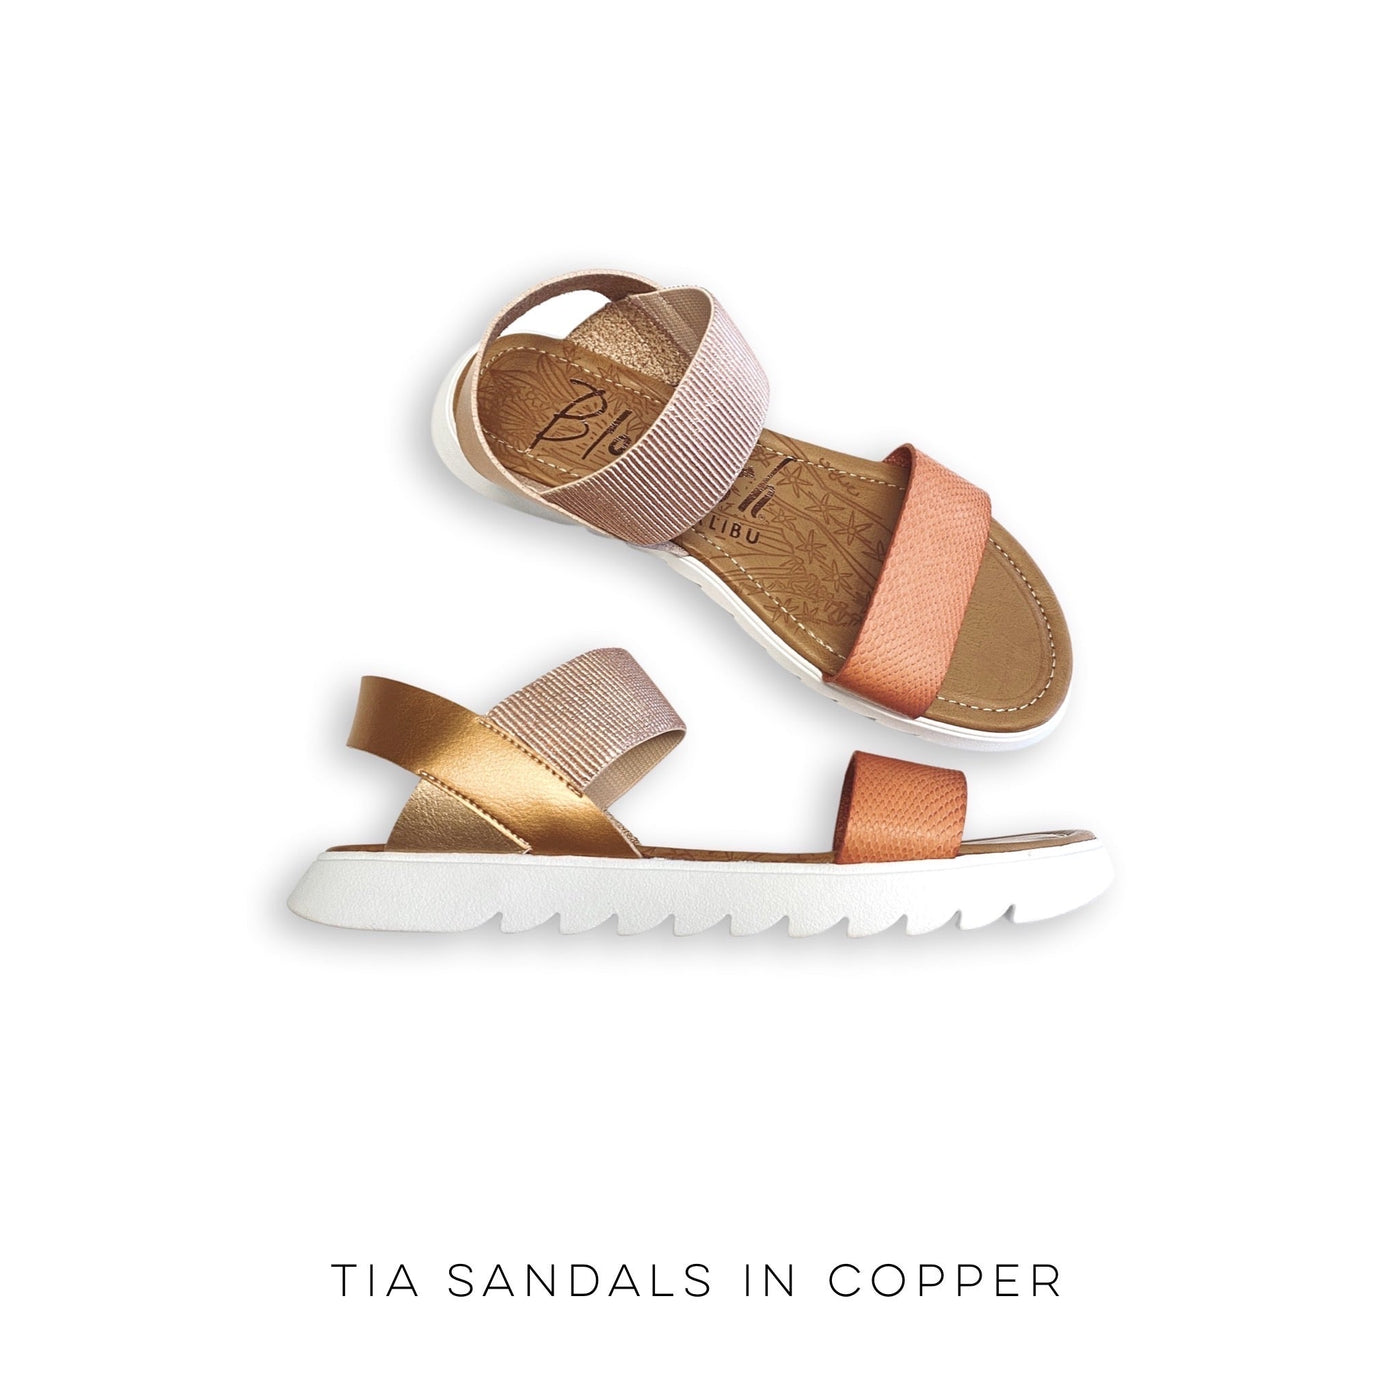 Blowfish Tia Sandals in Copper - Copper + Rose